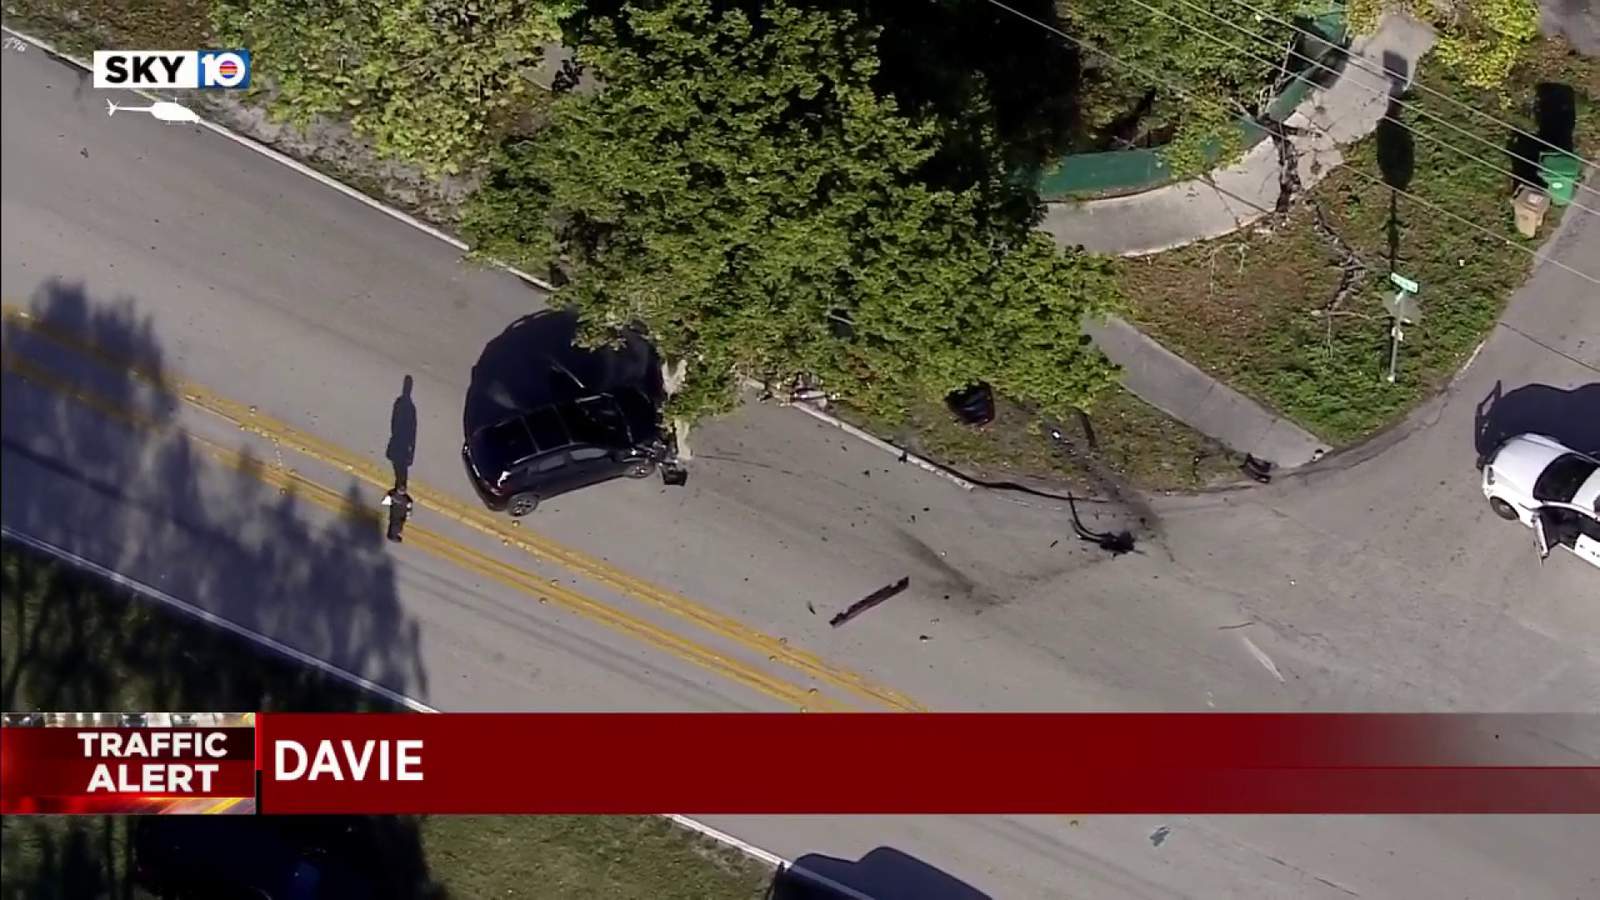 1 injured in Davie crash near Liberty Park, police say